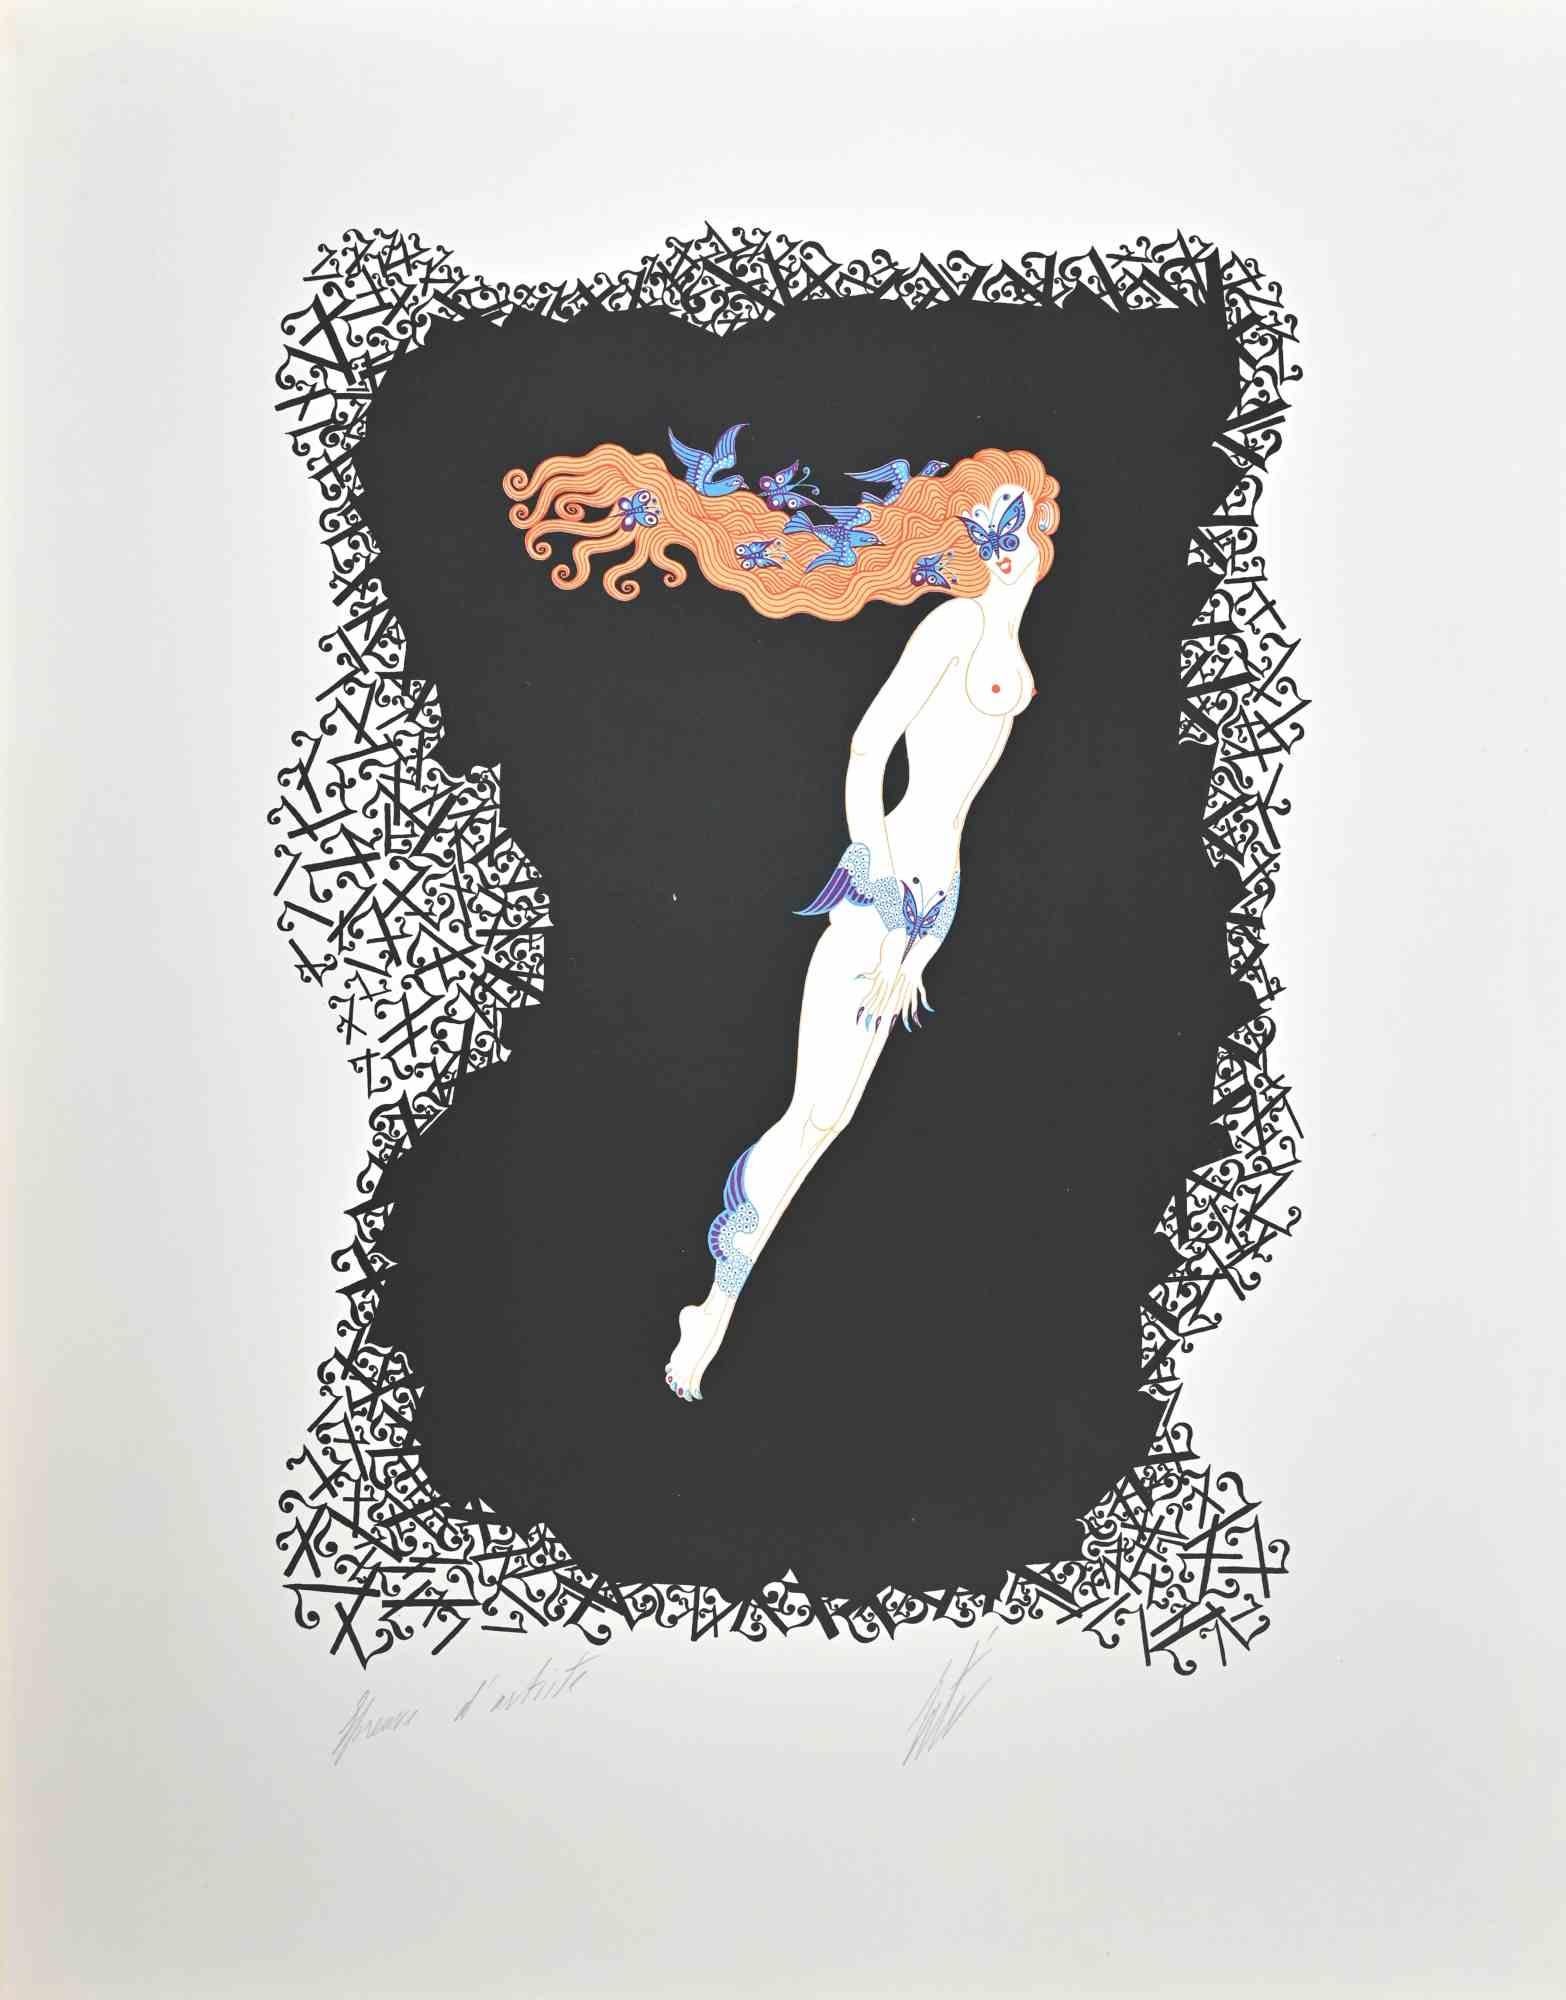 Le 7 est une œuvre d'art contemporain réalisée dans les années 1970 par Erté (Romain de Tirtoff).

Lithographie en couleurs mélangées sur papier.

L'œuvre d'art est tirée de la série "Les Chiffres".

Signé à la main dans la marge inférieure.

Preuve